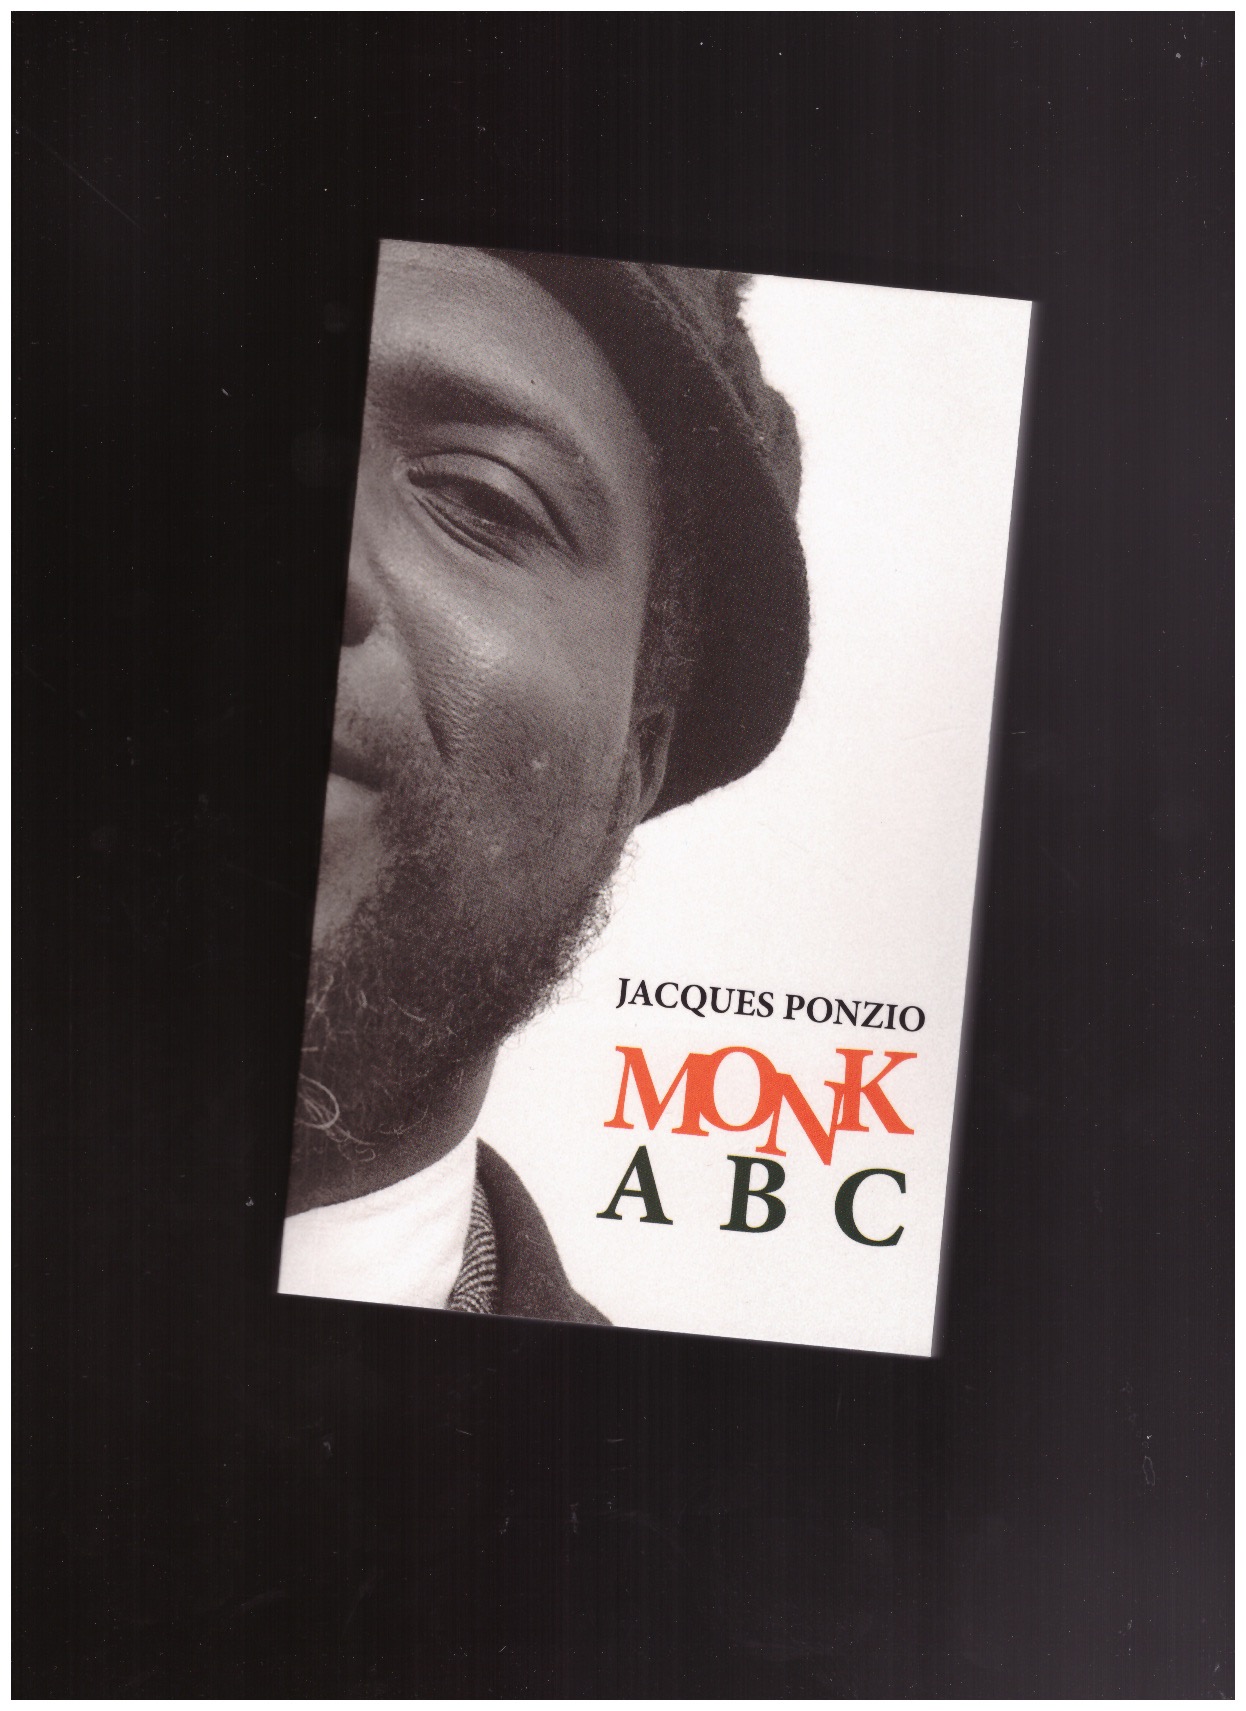 PONZIO, Jacques - Monk ABC